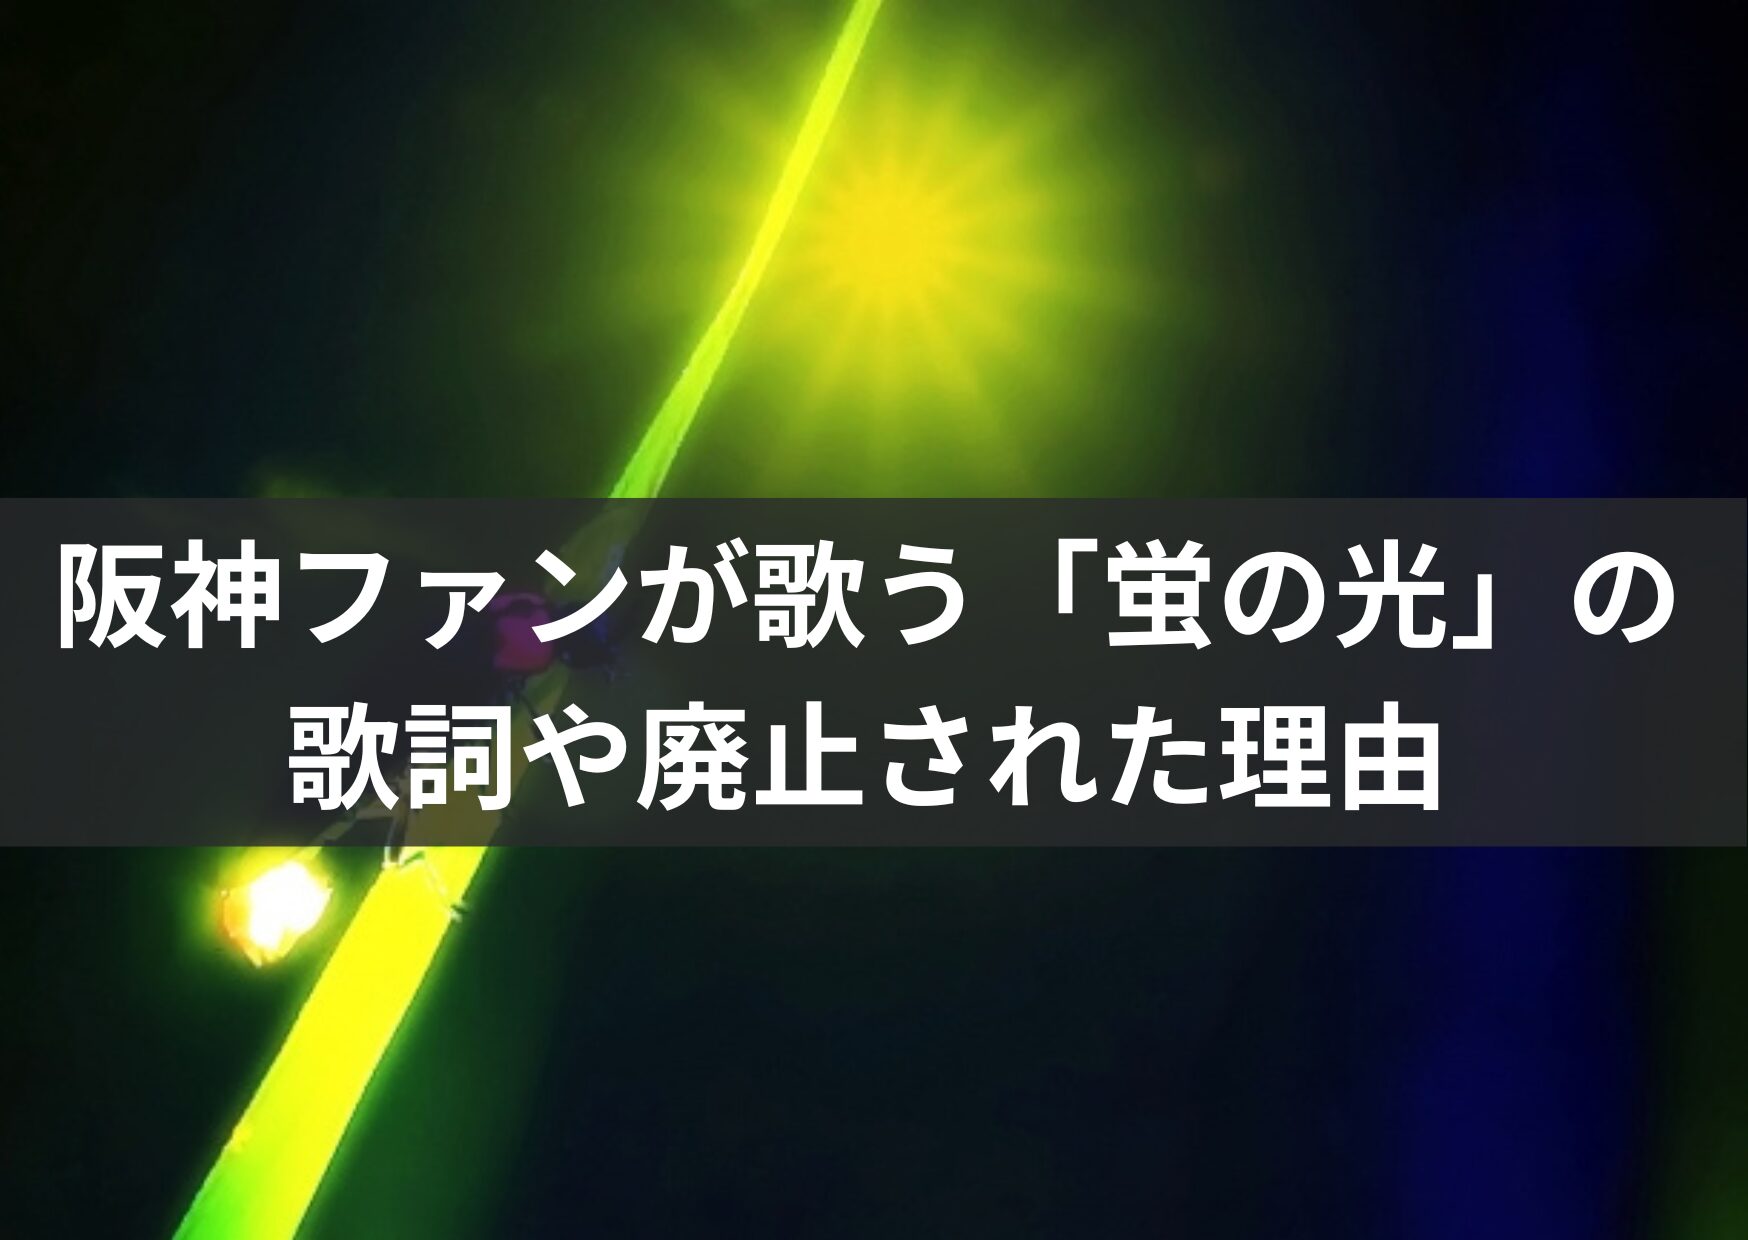 阪神ファンが歌う「蛍の光」の歌詞や廃止された理由